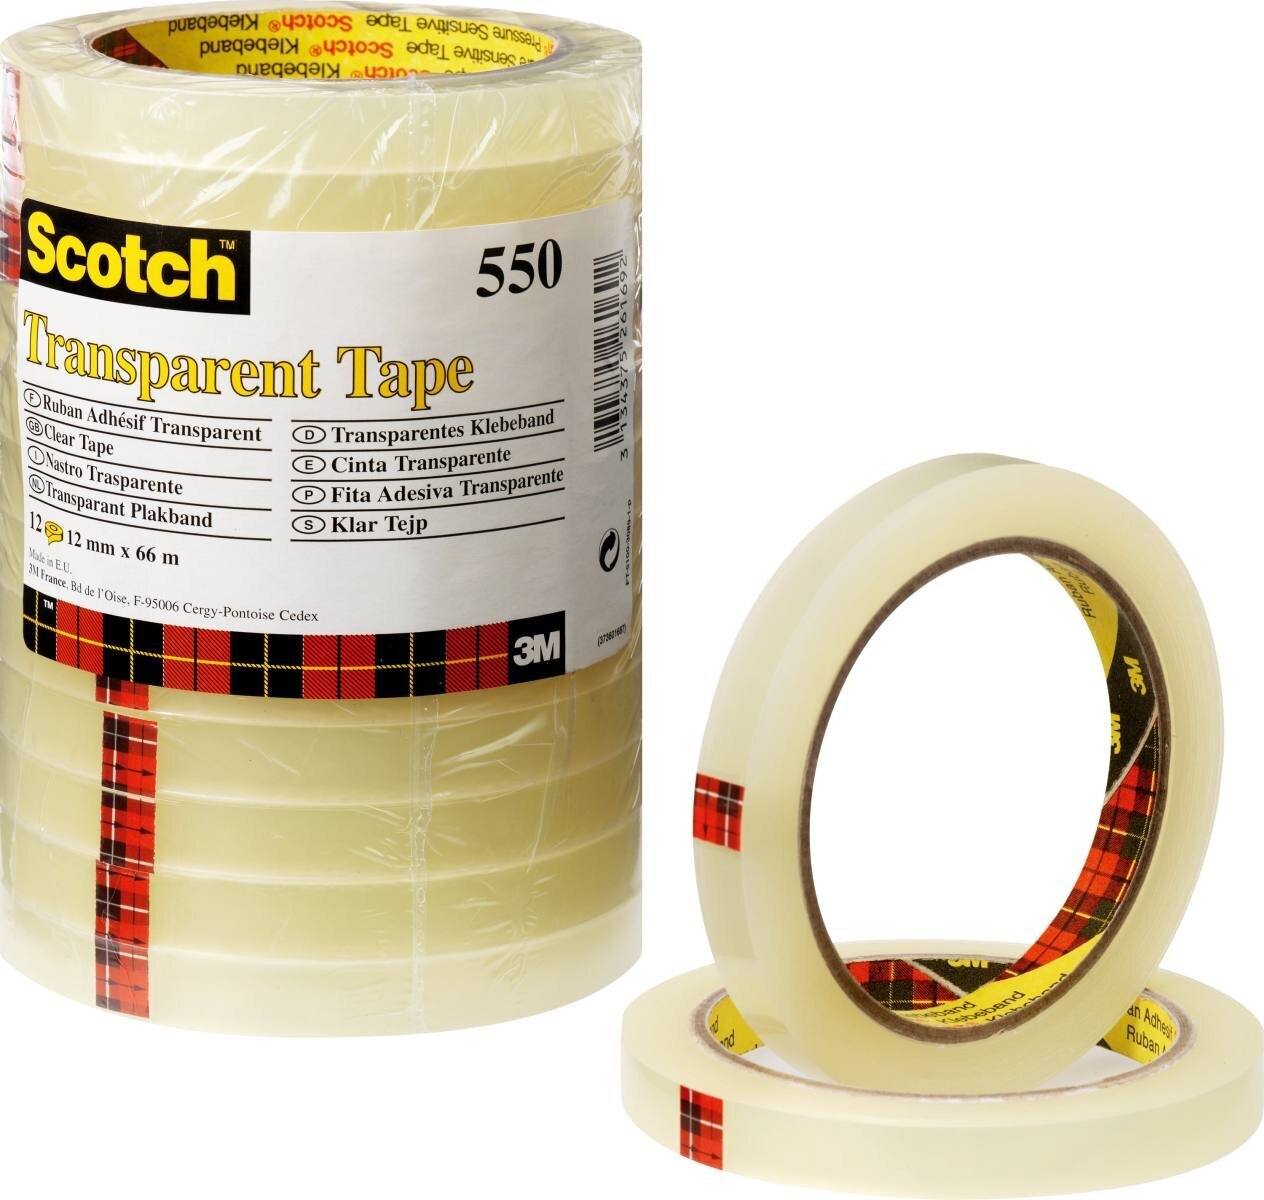 Cinta adhesiva transparente 3M Scotch 550, 19 mm x 66 m, transparente, paquete de 8 rollos